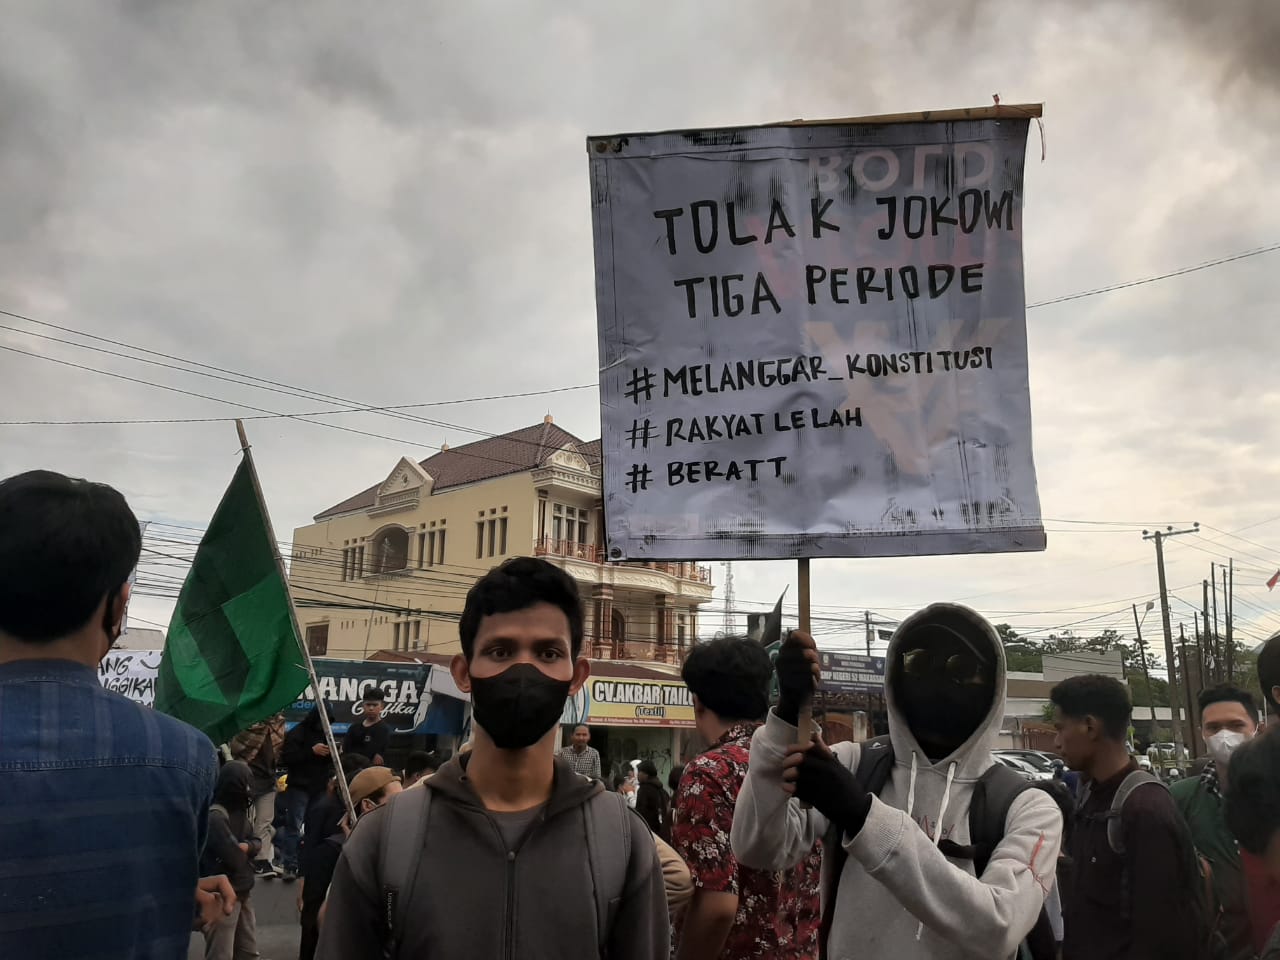 Mahasiswa di Makassar Demo-Blokade Jalan Tolak Penundaan Pemilu dan Jokowi Tiga Periode